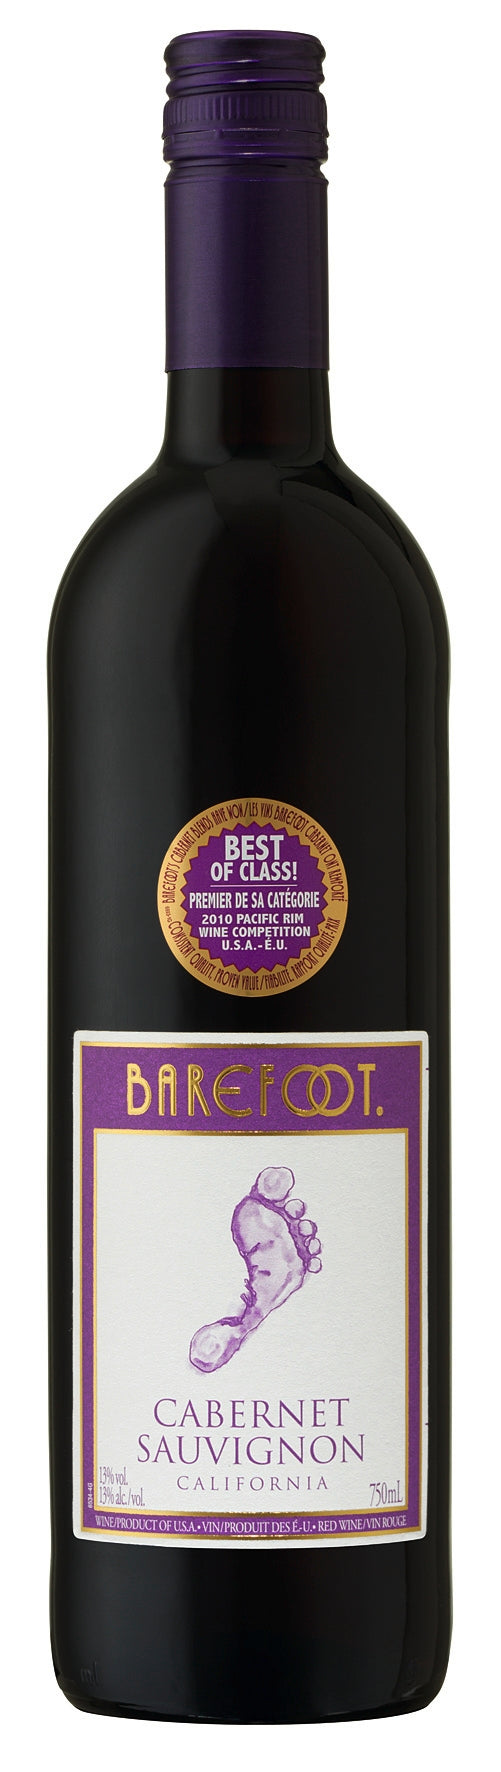 Barefoot Cabernet Sauvignon Rotwein halbtrocken aus California 750ml 13,5% Vol